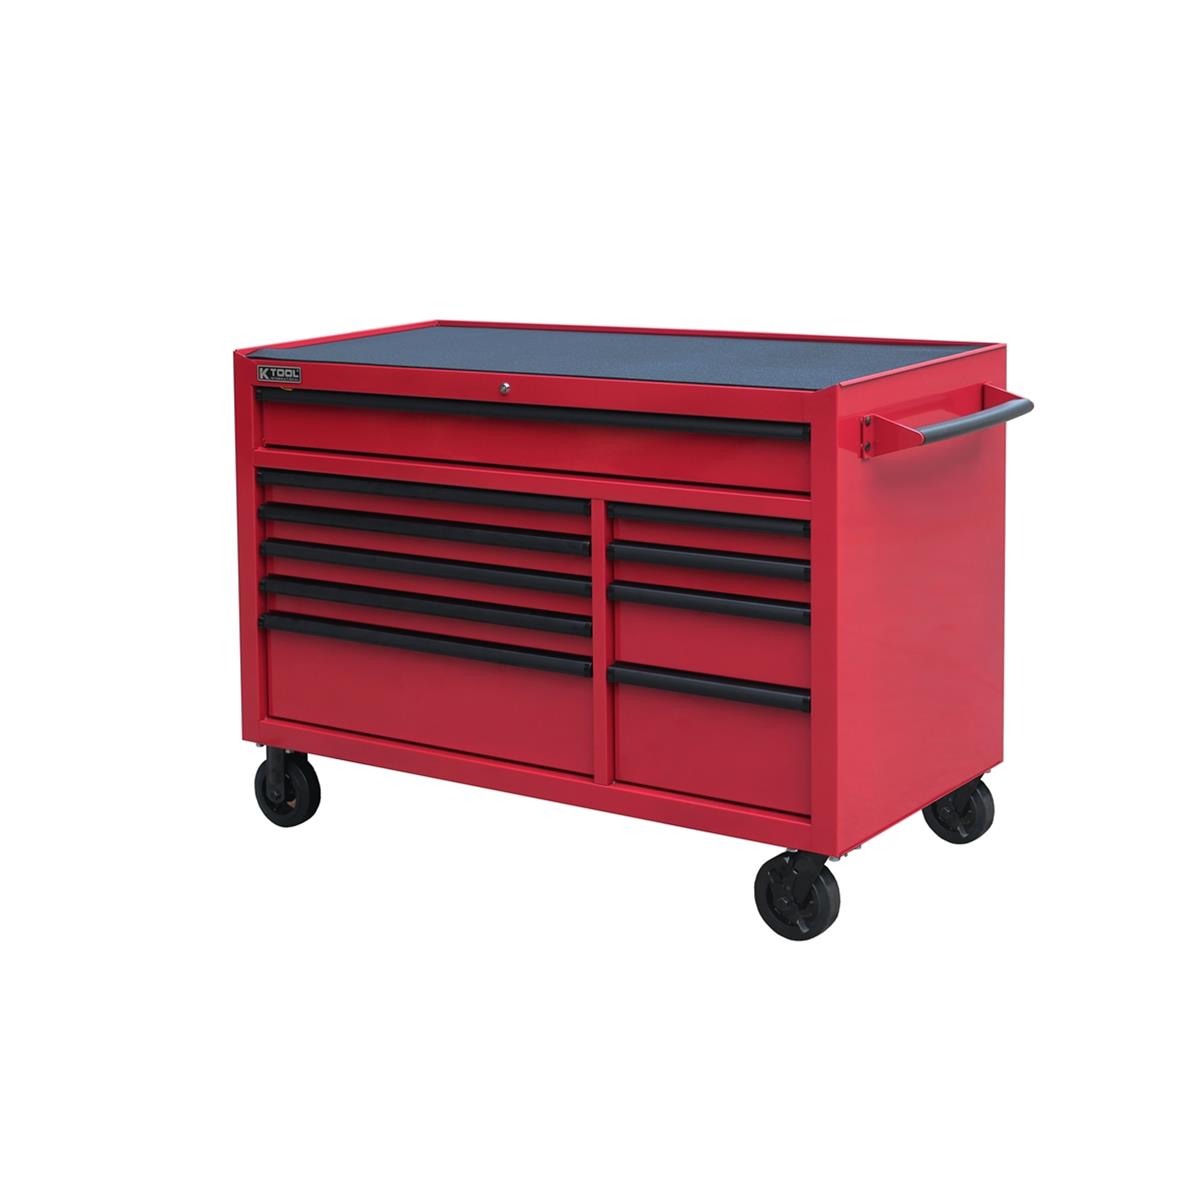 K-Tool International KTI75156 - Red Tool Cabinet Pro Series 54" Rolling 10-Drawer